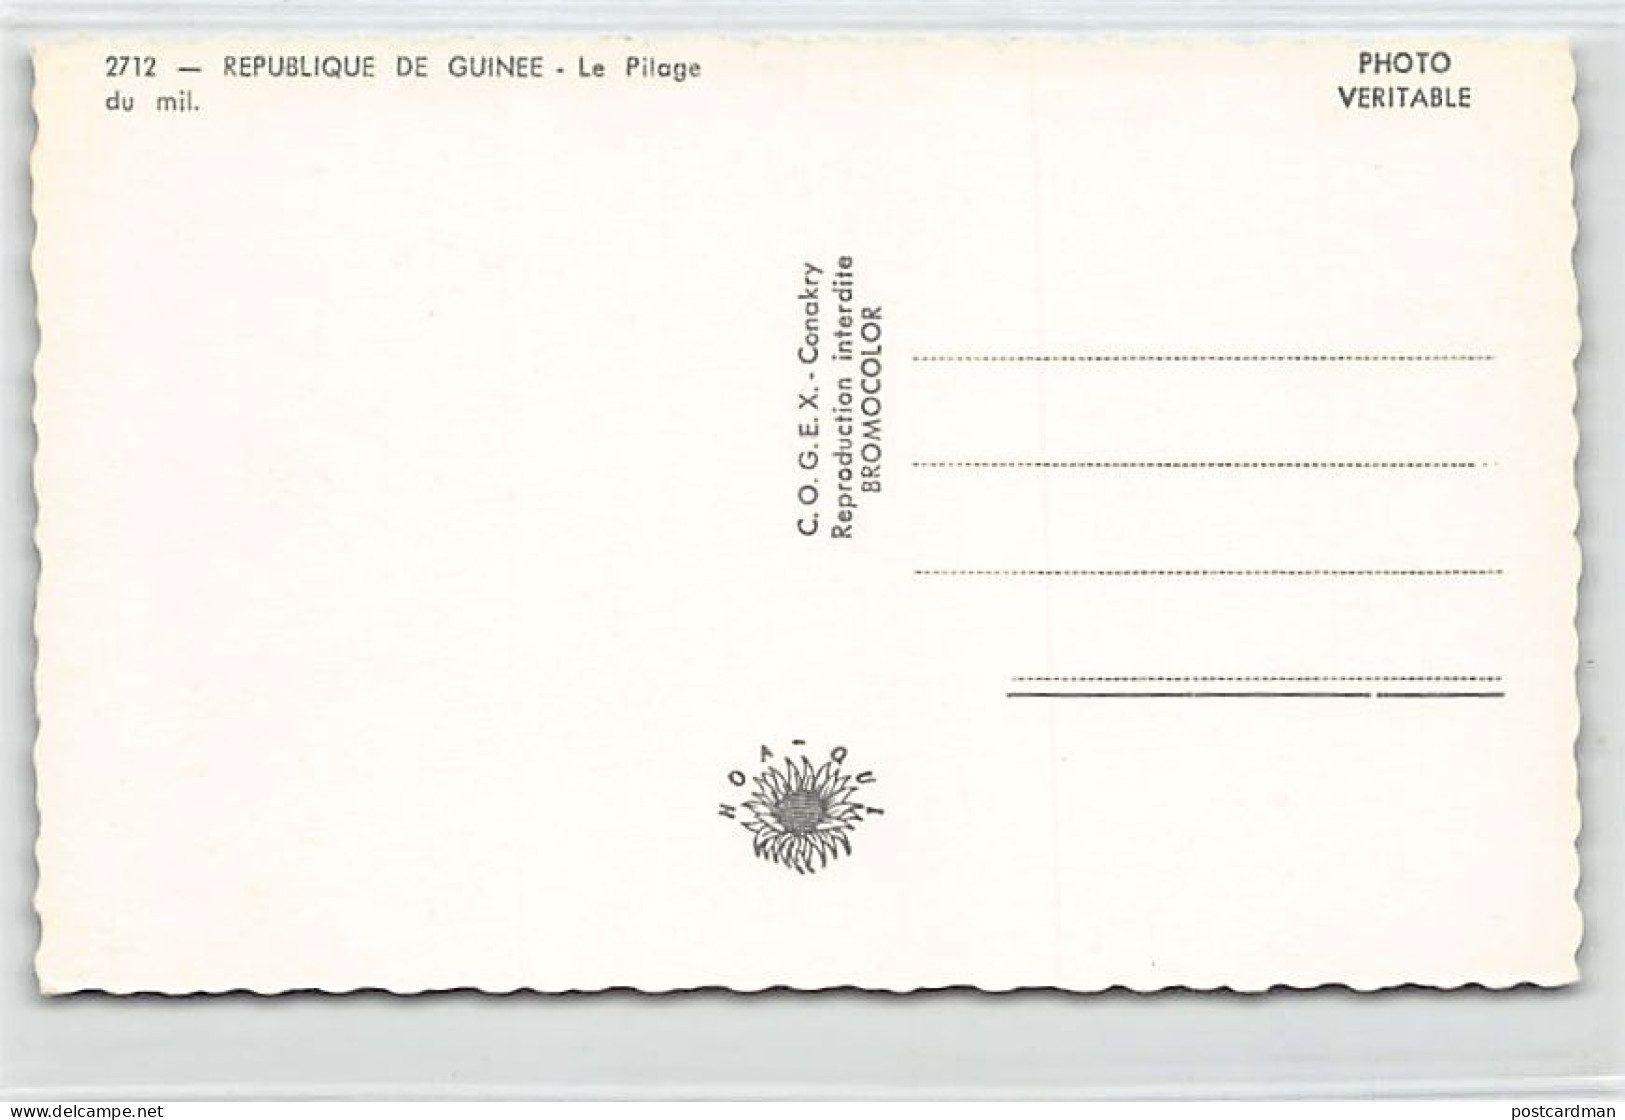 Guinée Conakry - Le Pilage Du Mil - Ed. C.O.G.E.X. 2712 - Guinea